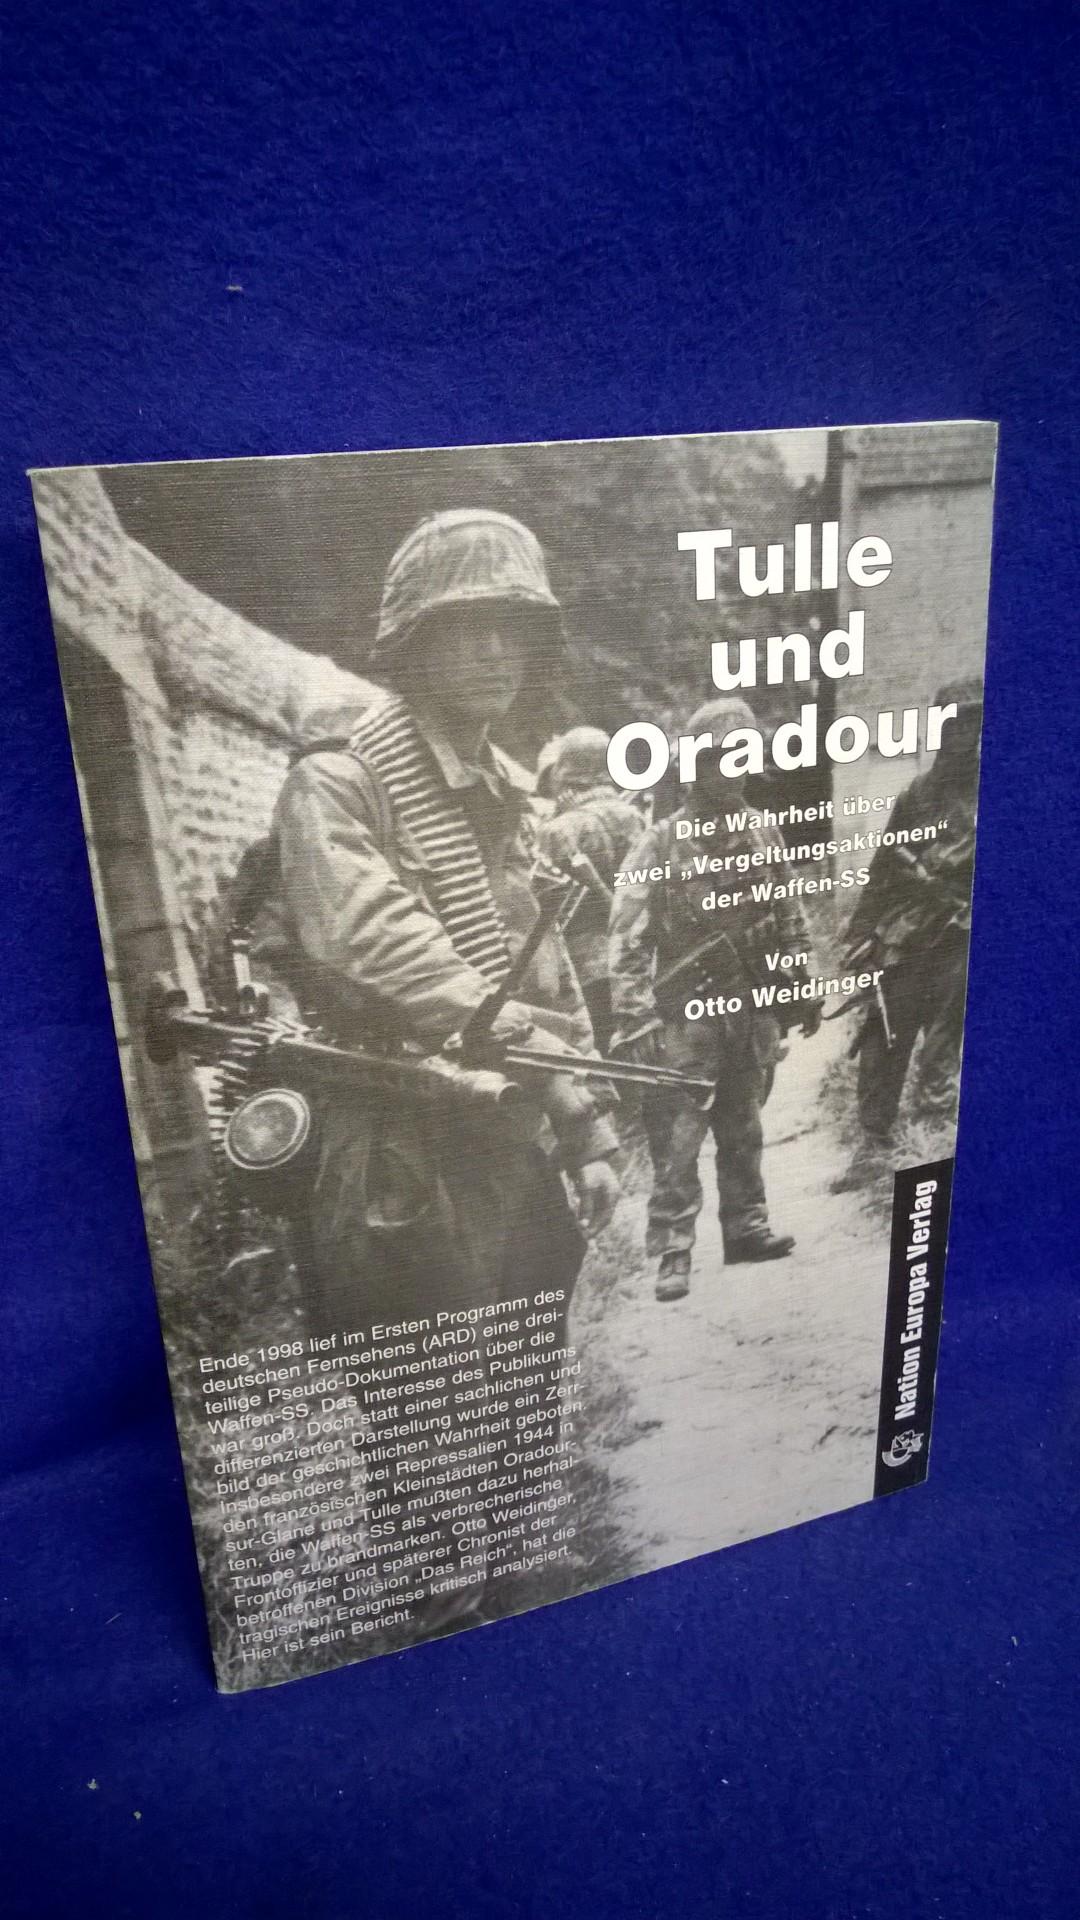 Tulle und Oradour. Die Wahrheit über zwei "Vergeltungsaktionen" der Waffen-SS.